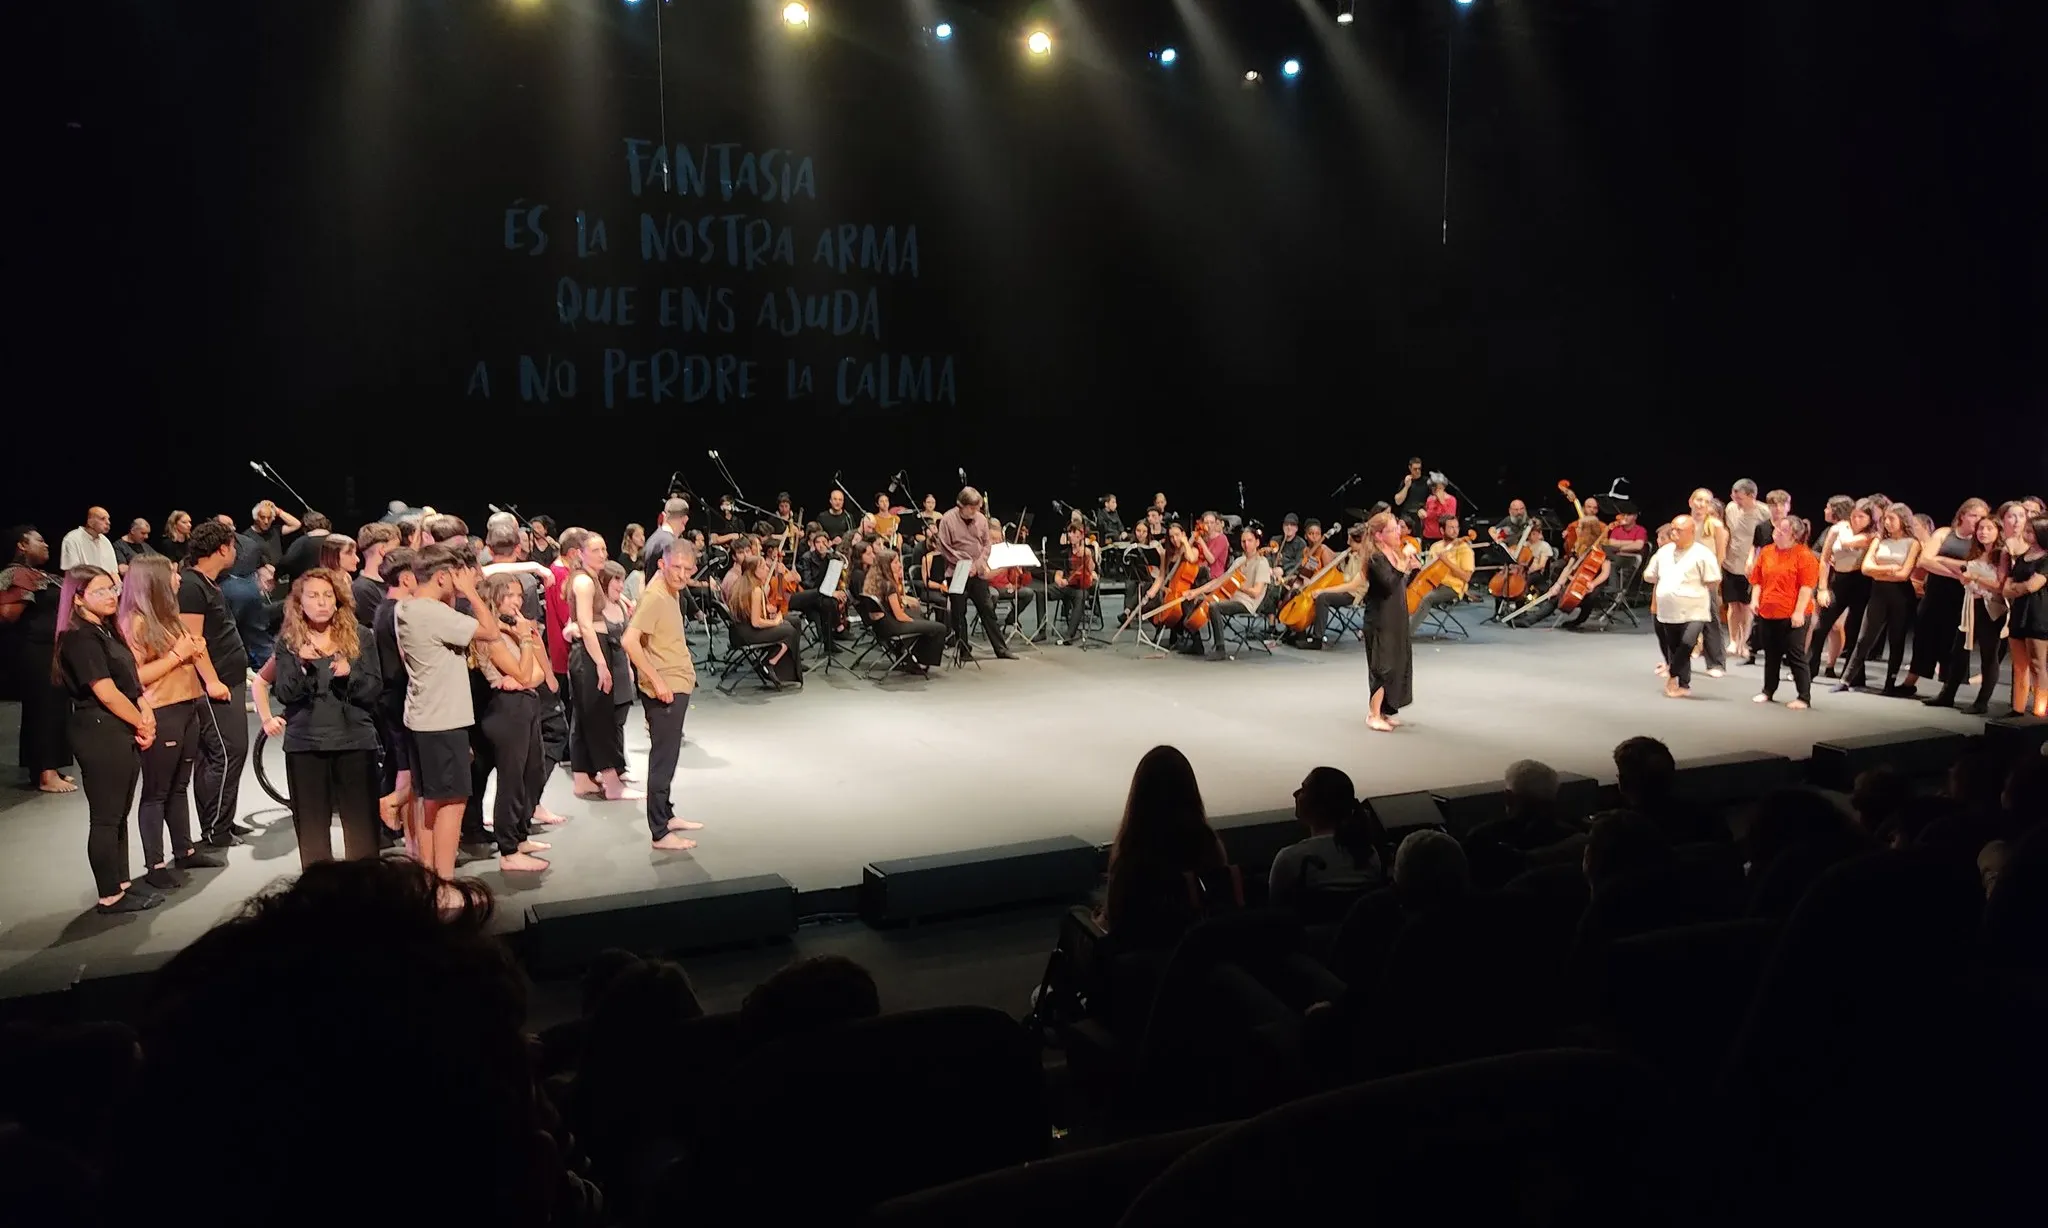 Gairebé cent quaranta persones van interpretar 'La Fantasia' a la sala Maria Aurèlia Capmany del Mercat de les Flors, a Barcelona.